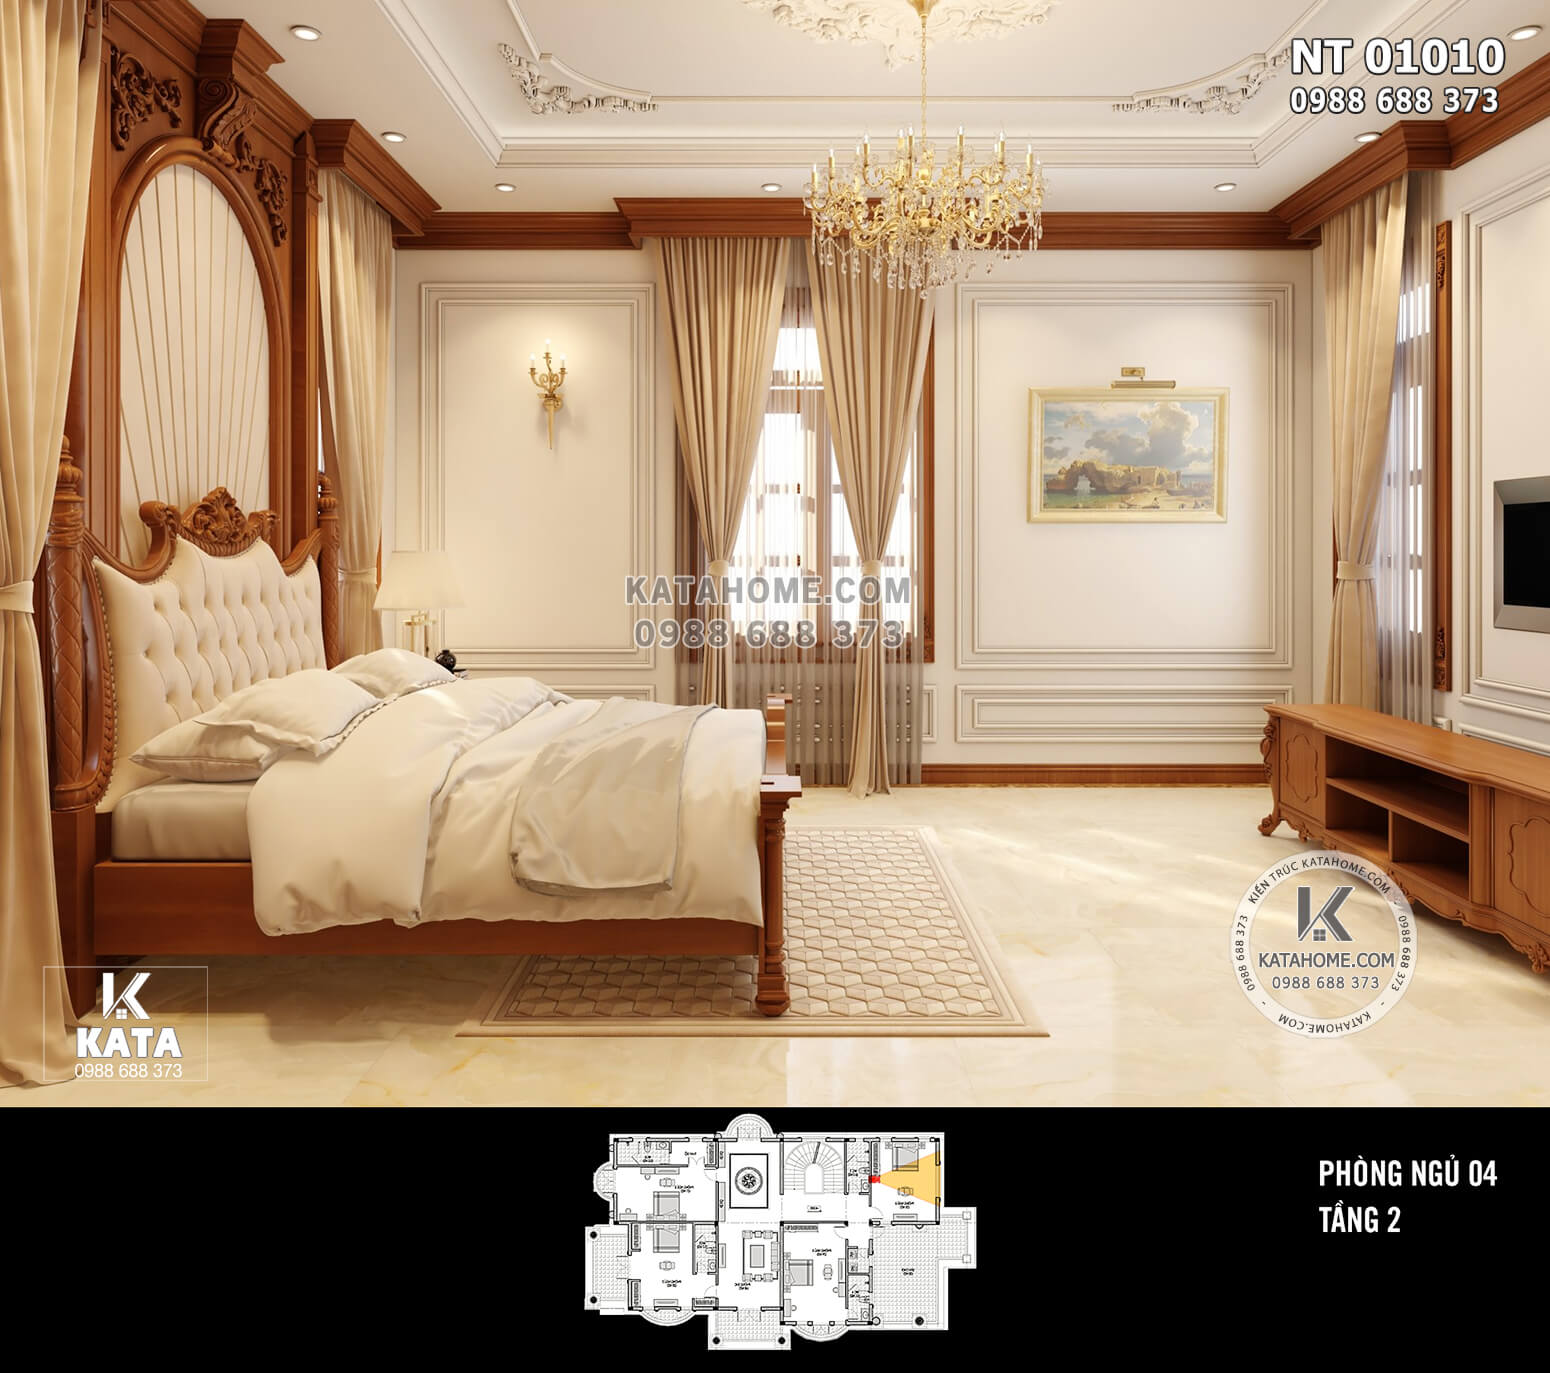 Hình ảnh: Thiết kế phòng ngủ nội thất gỗ tân cổ điển - NT 01010